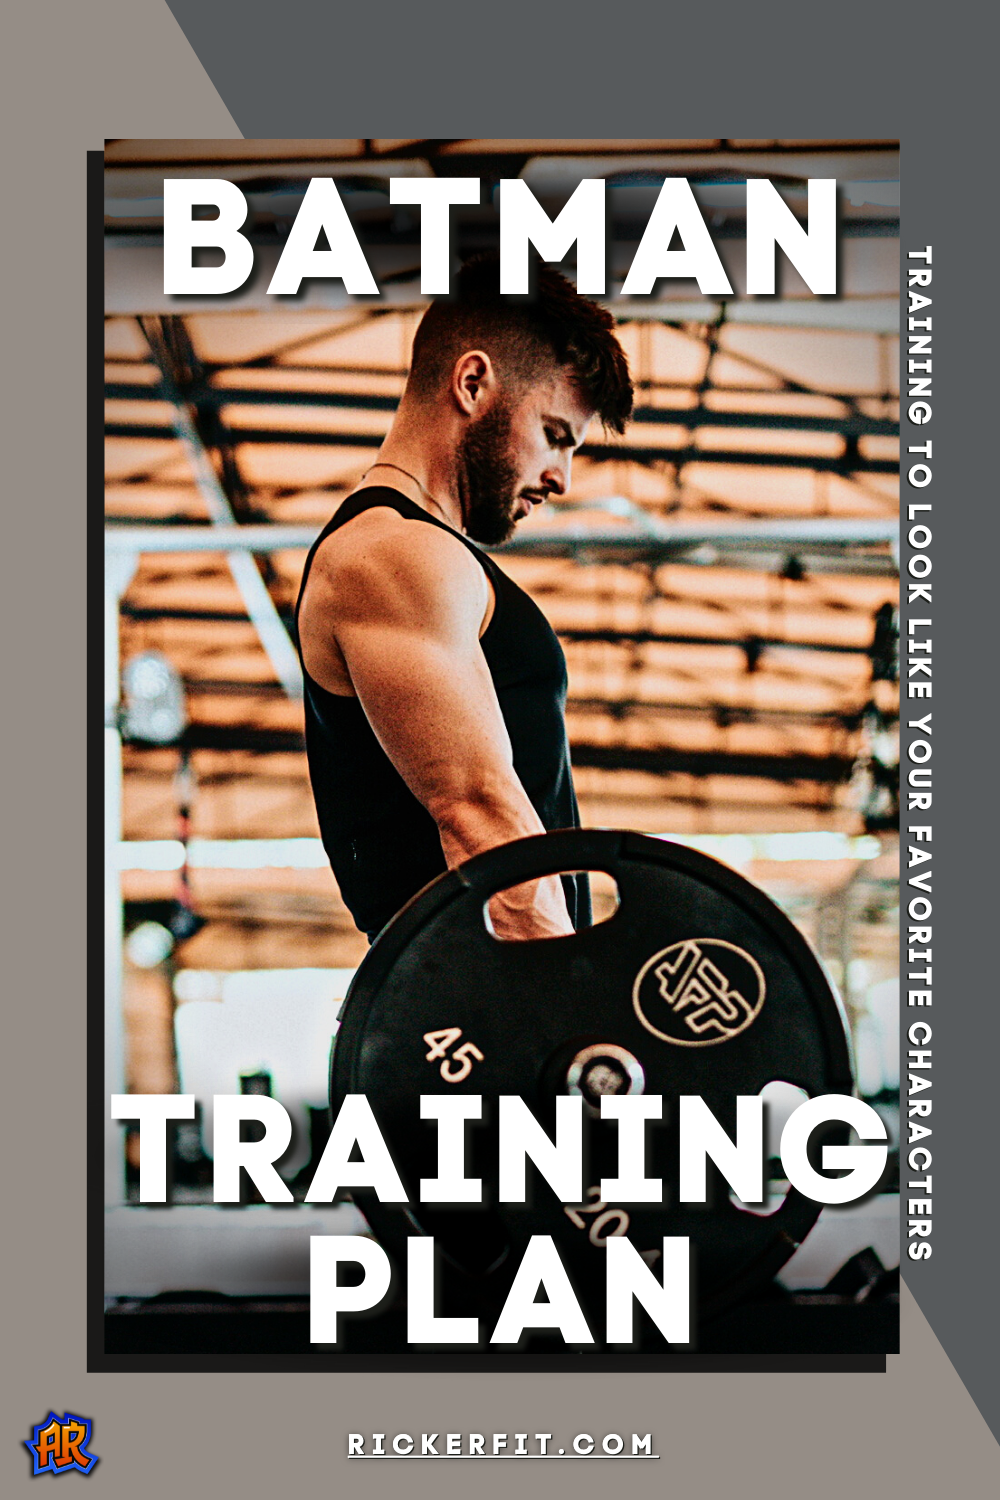 Batman Physique Training Guide